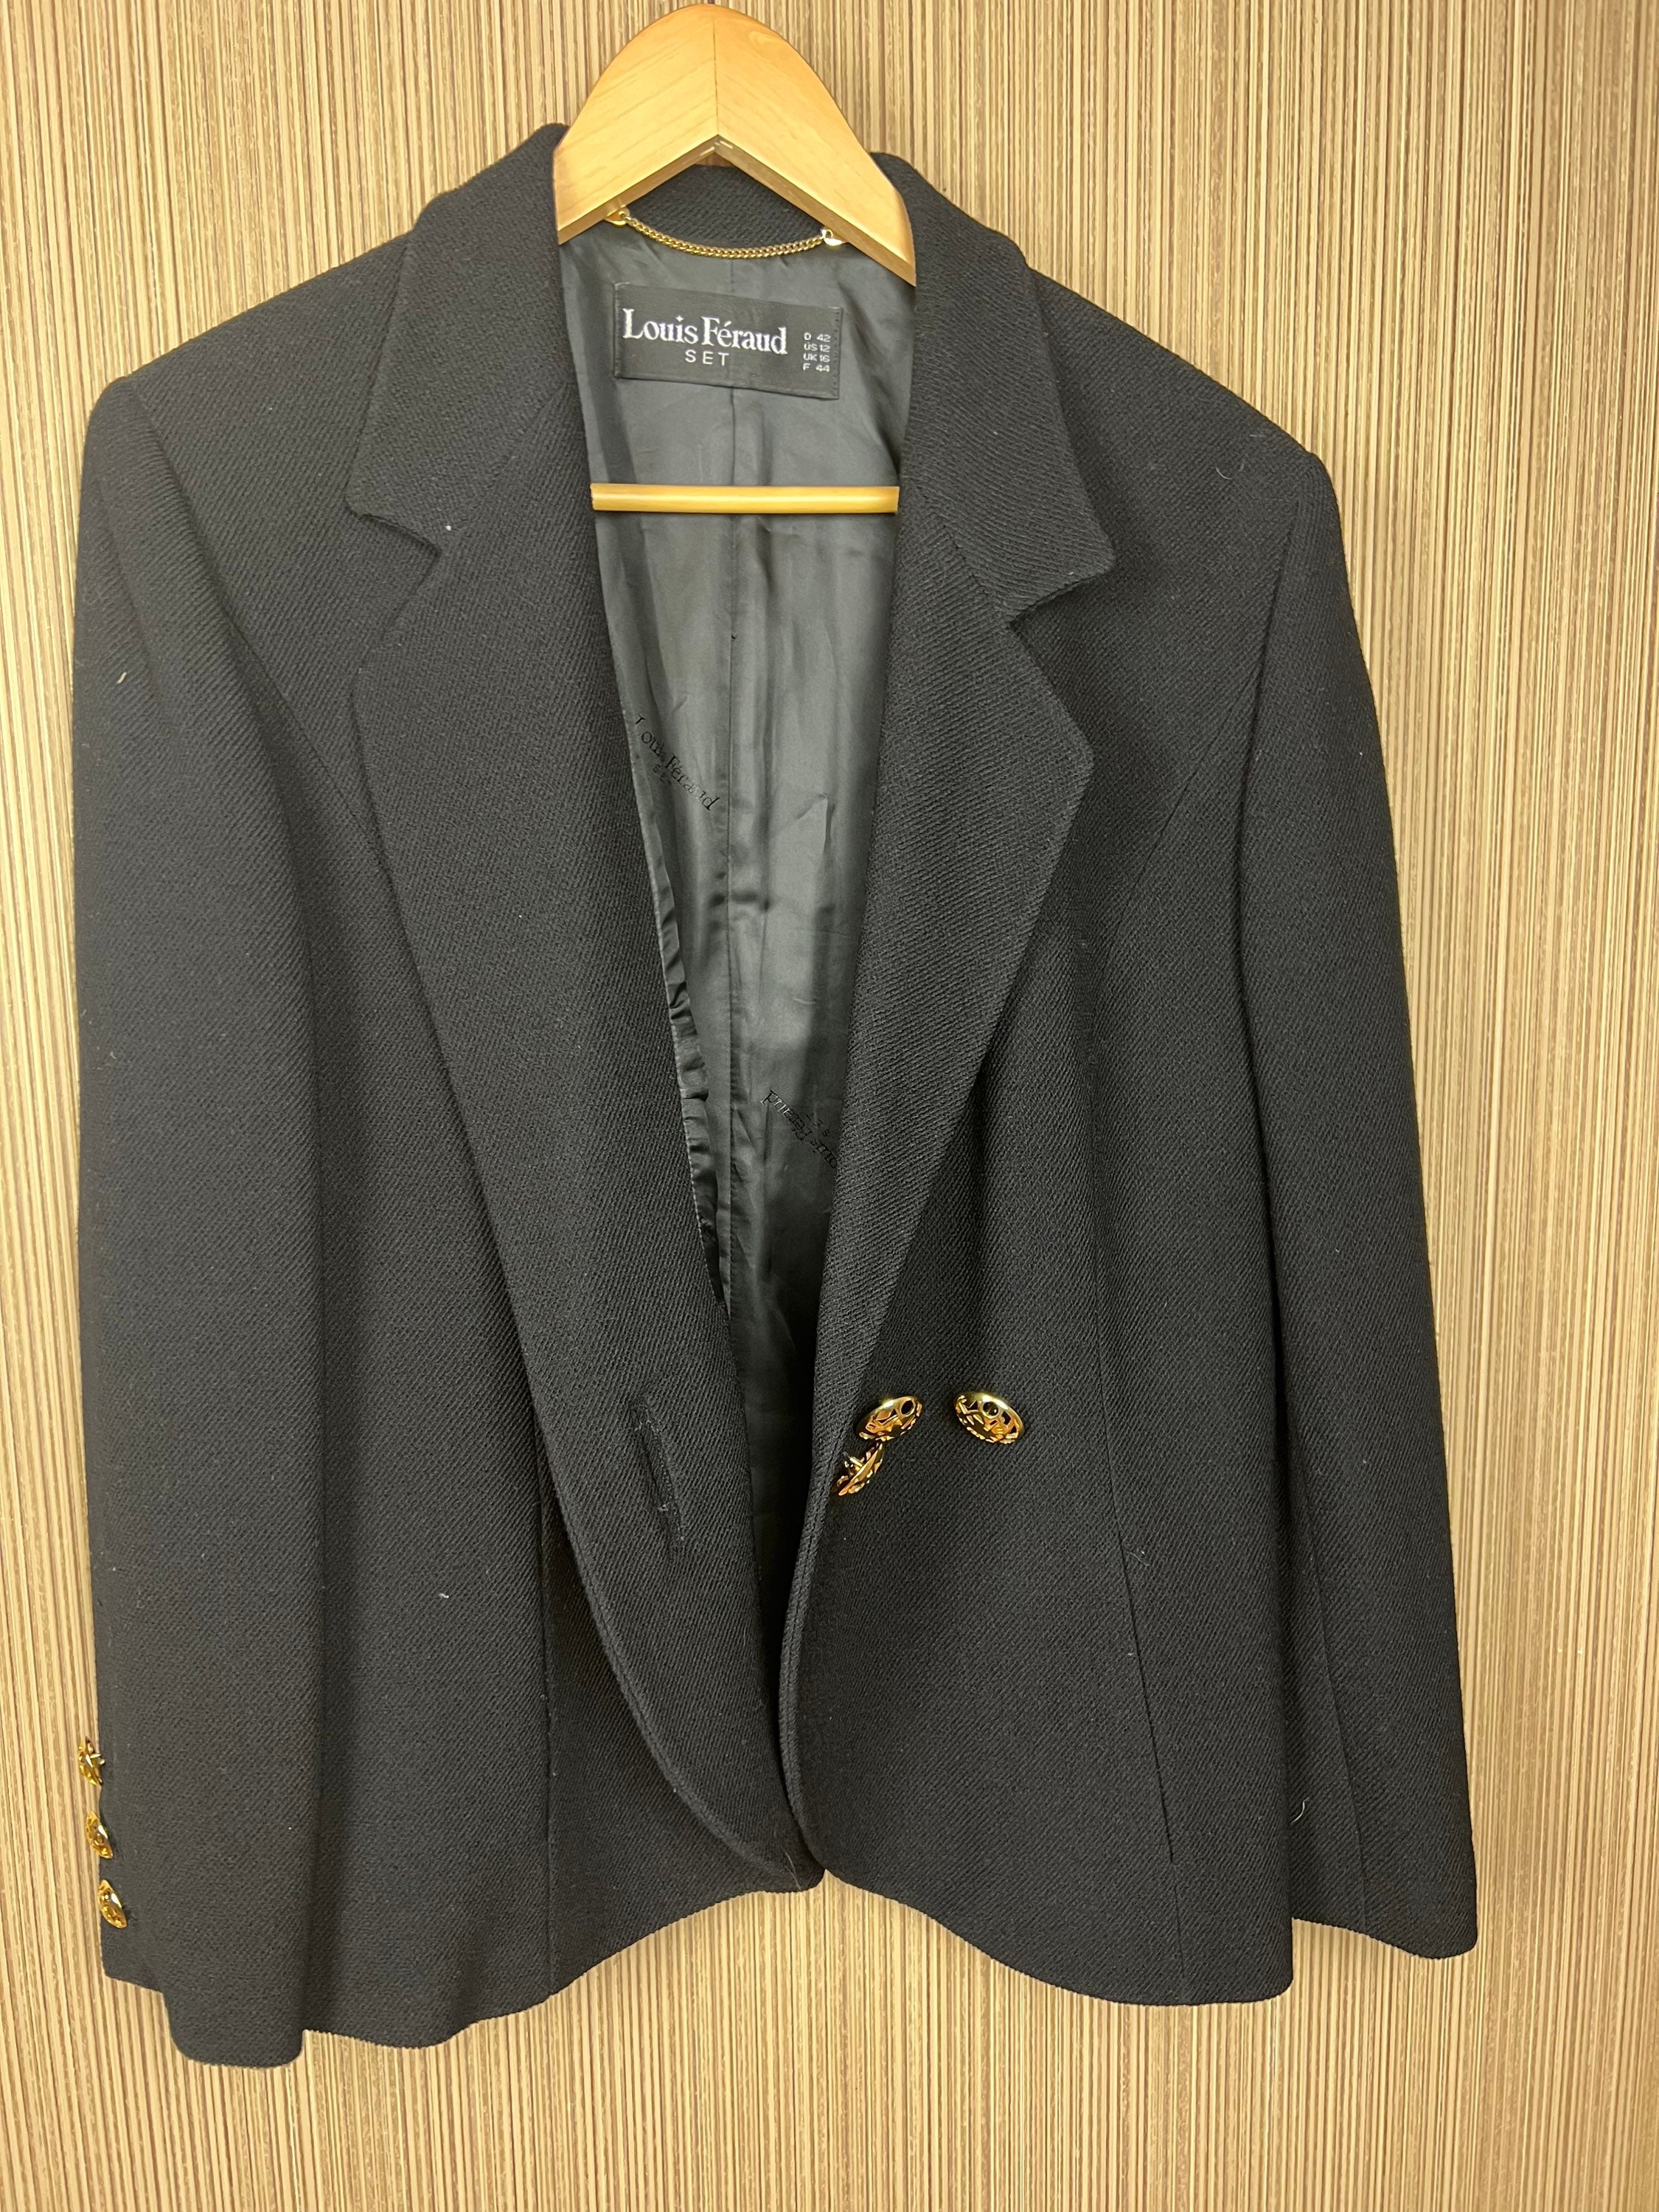 Vintage Jacket Louis Féraud Jacket 